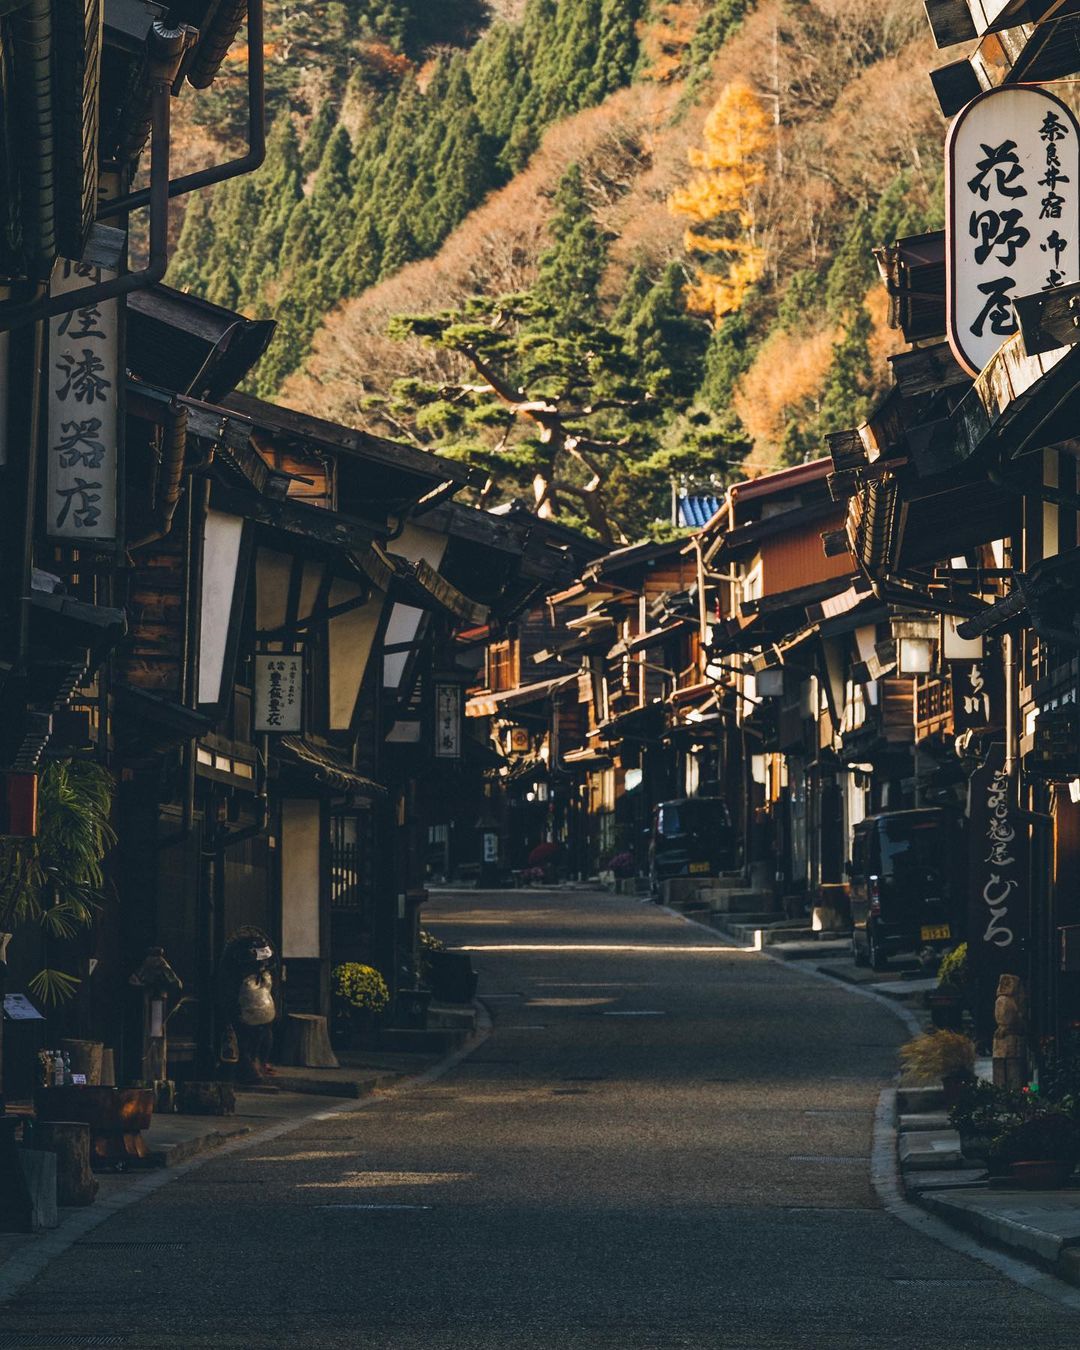 Города и природа Японии на снимках Юмы Ямашиты городской, Ямашита, Японии, Читать, подписчиков, более, в Instagram, делится, фотограф, работами, Своими, сцены, городские, волшебные, запечатлеть, чтобы, исследует, улицы, Yamashita, фотографии